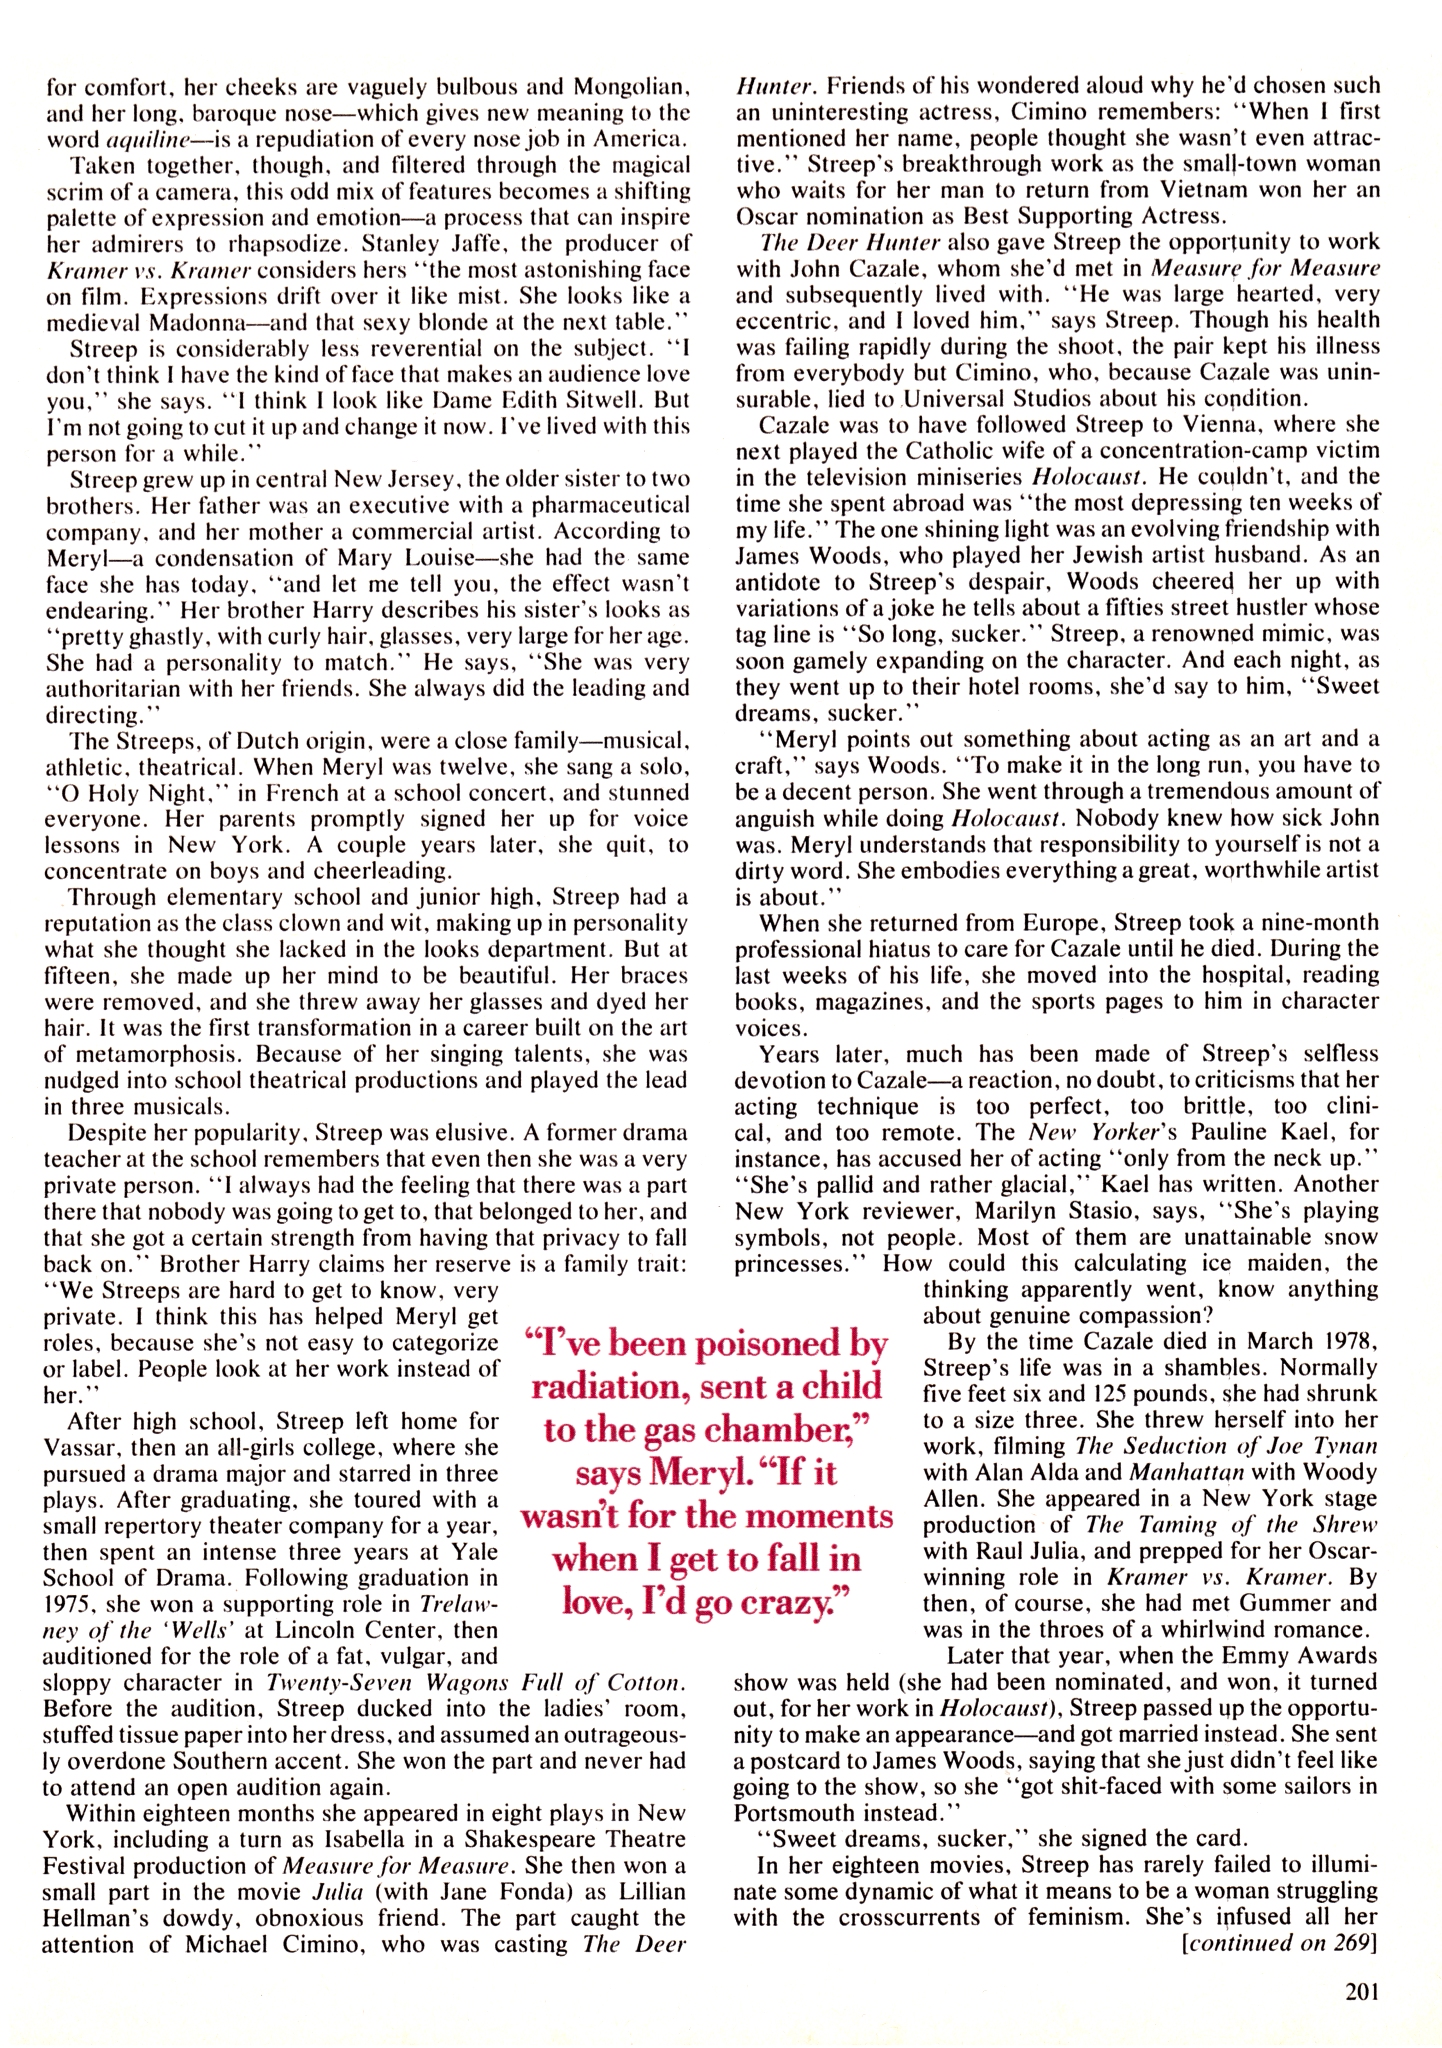 article-cosmopolitan-may1991-04.jpg